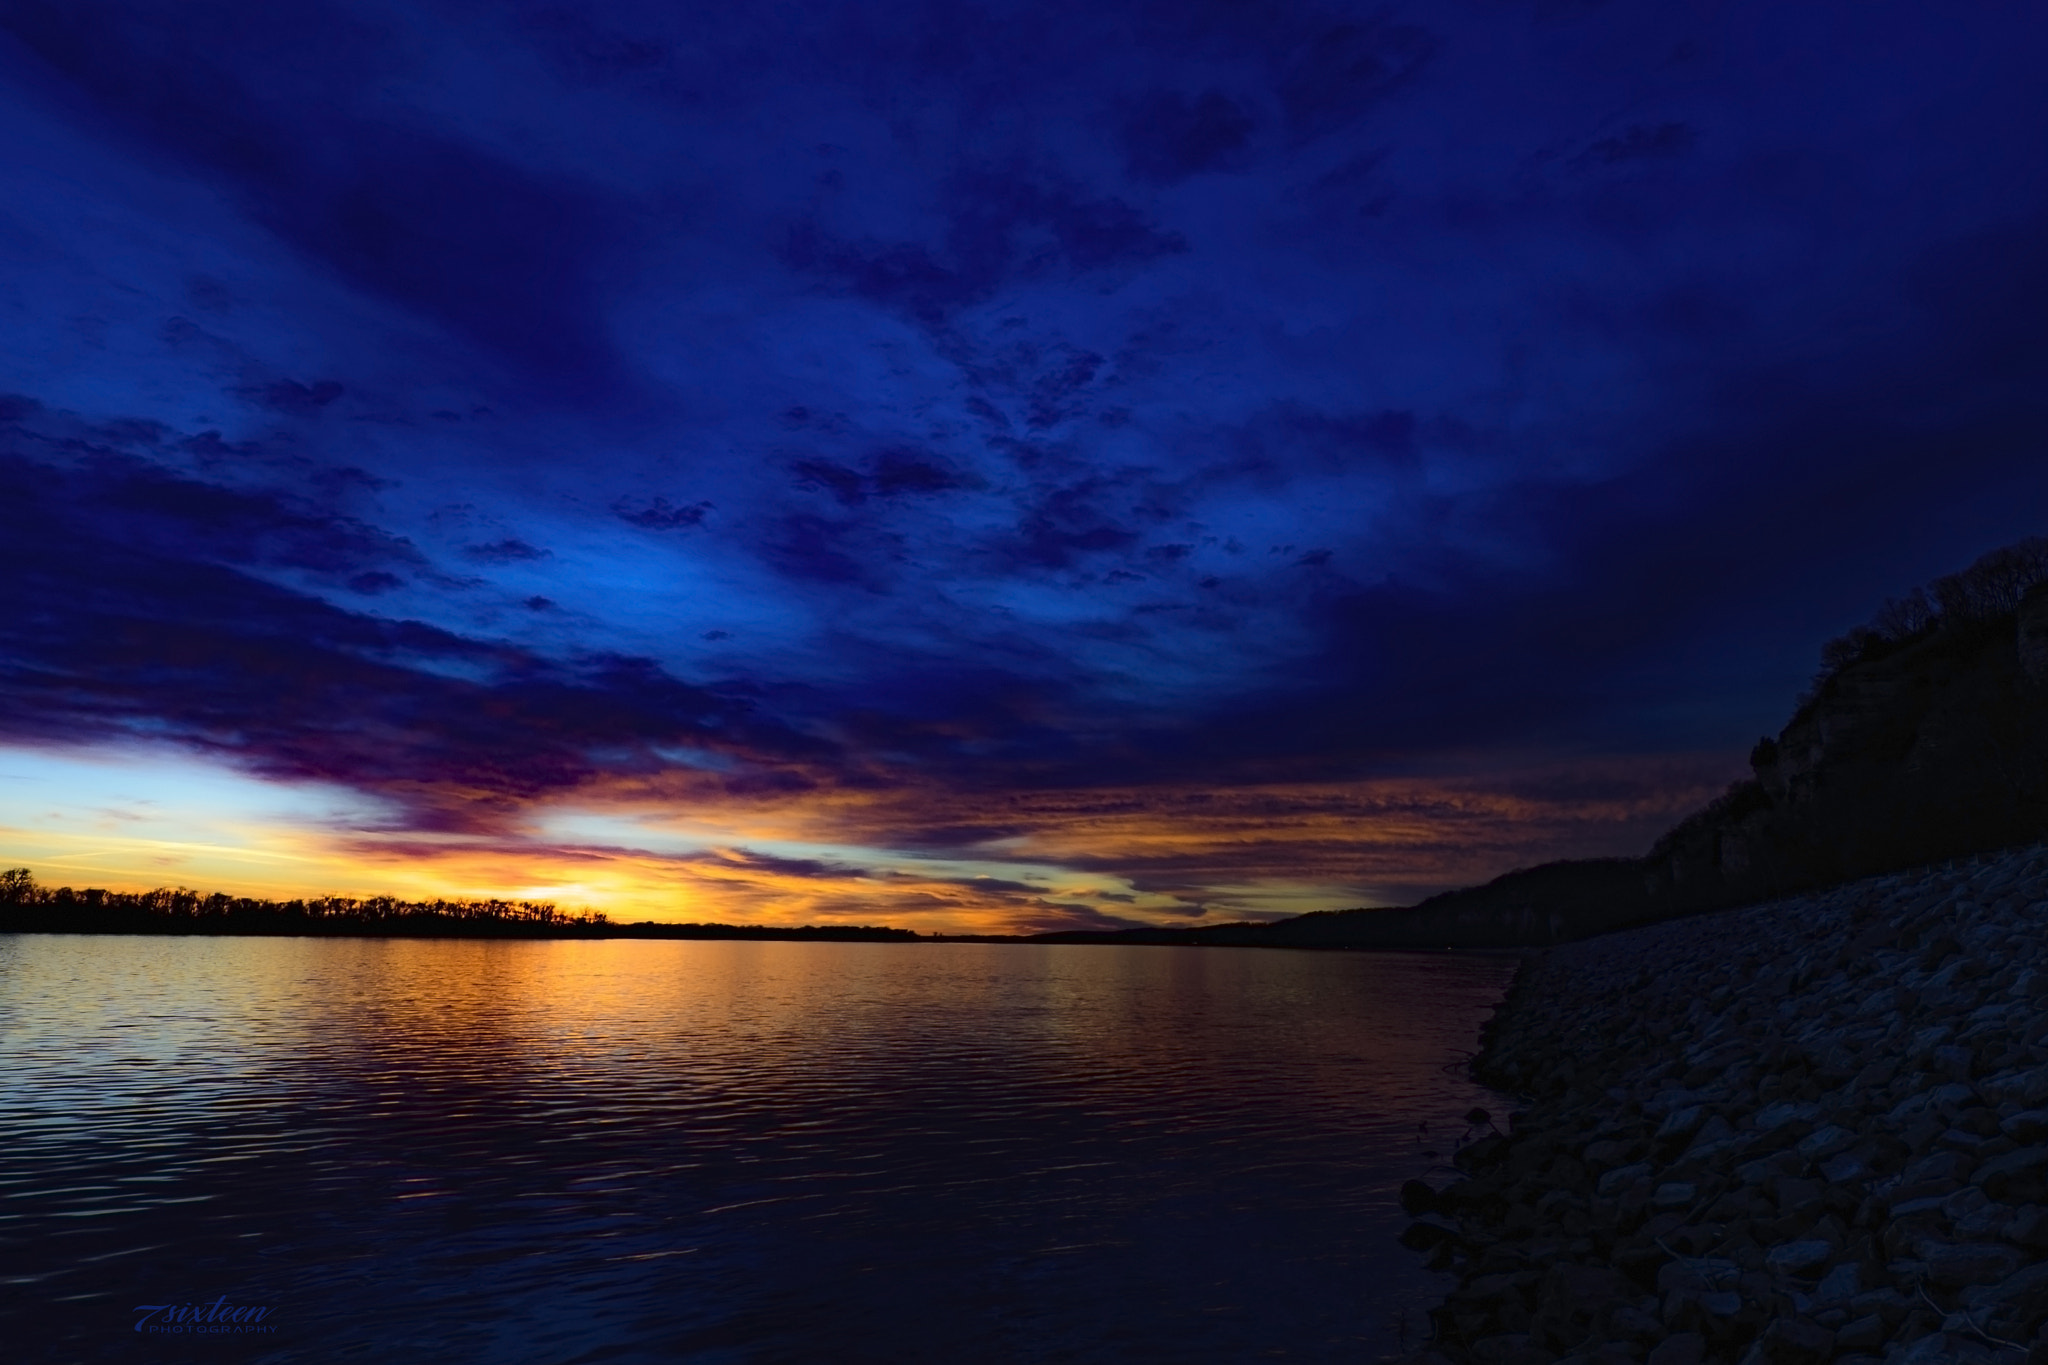 Nikon D500 sample photo. Spectacular sunset photography